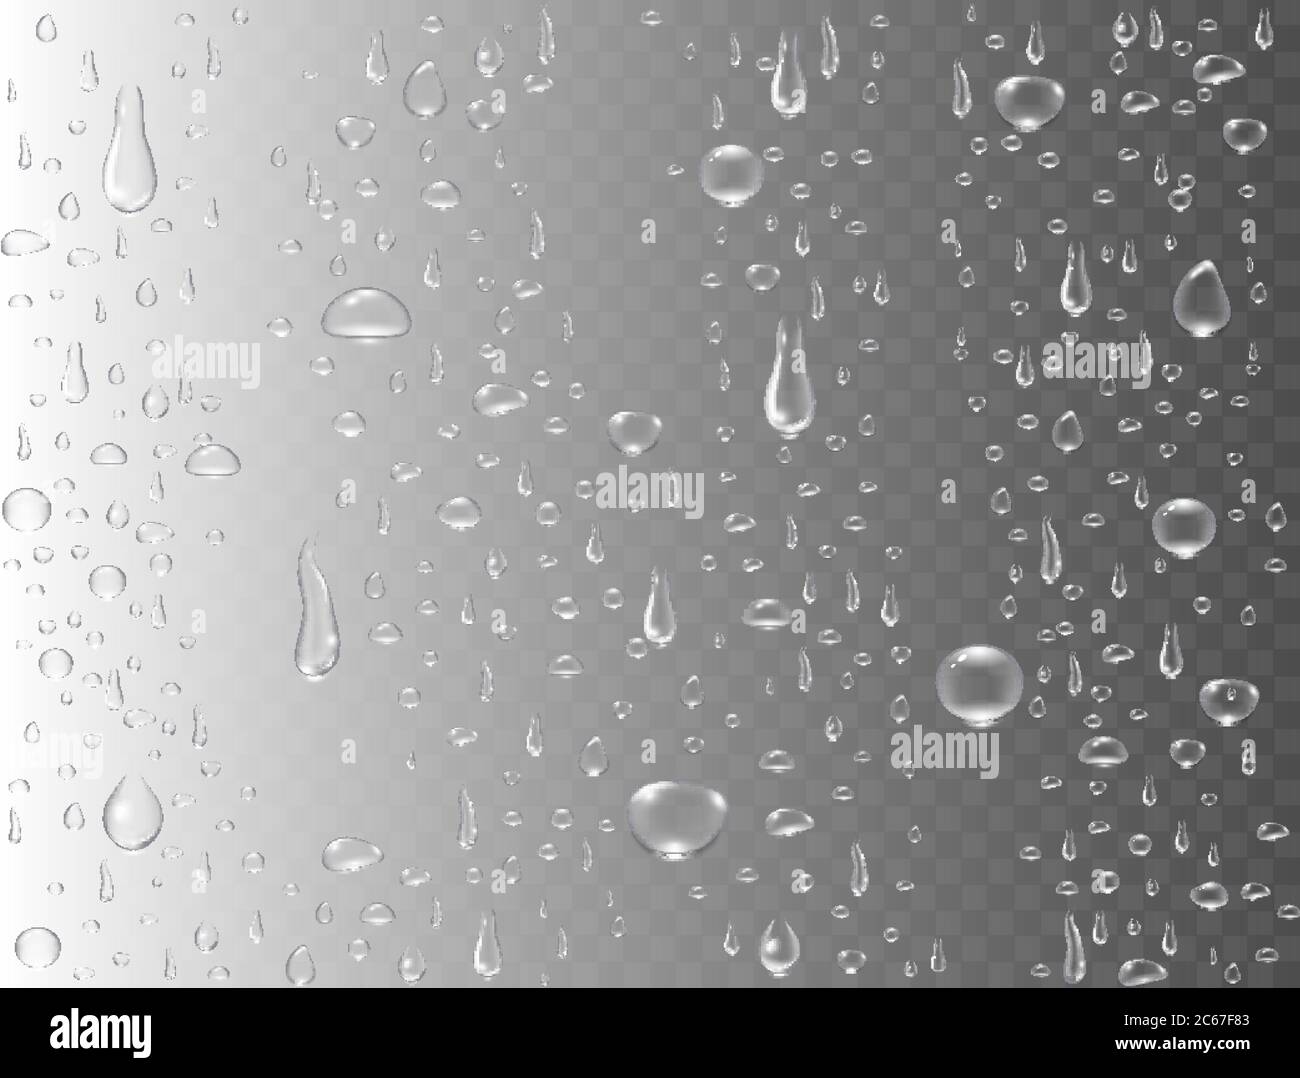 Realistische Wassertropfen auf transparentem Hintergrund. Regentropfen oder Dampfdusche. Verdichtete reine Tröpfchen. Klare Dampfblasen auf der Glasfläche des Fensters. Vec Stock Vektor